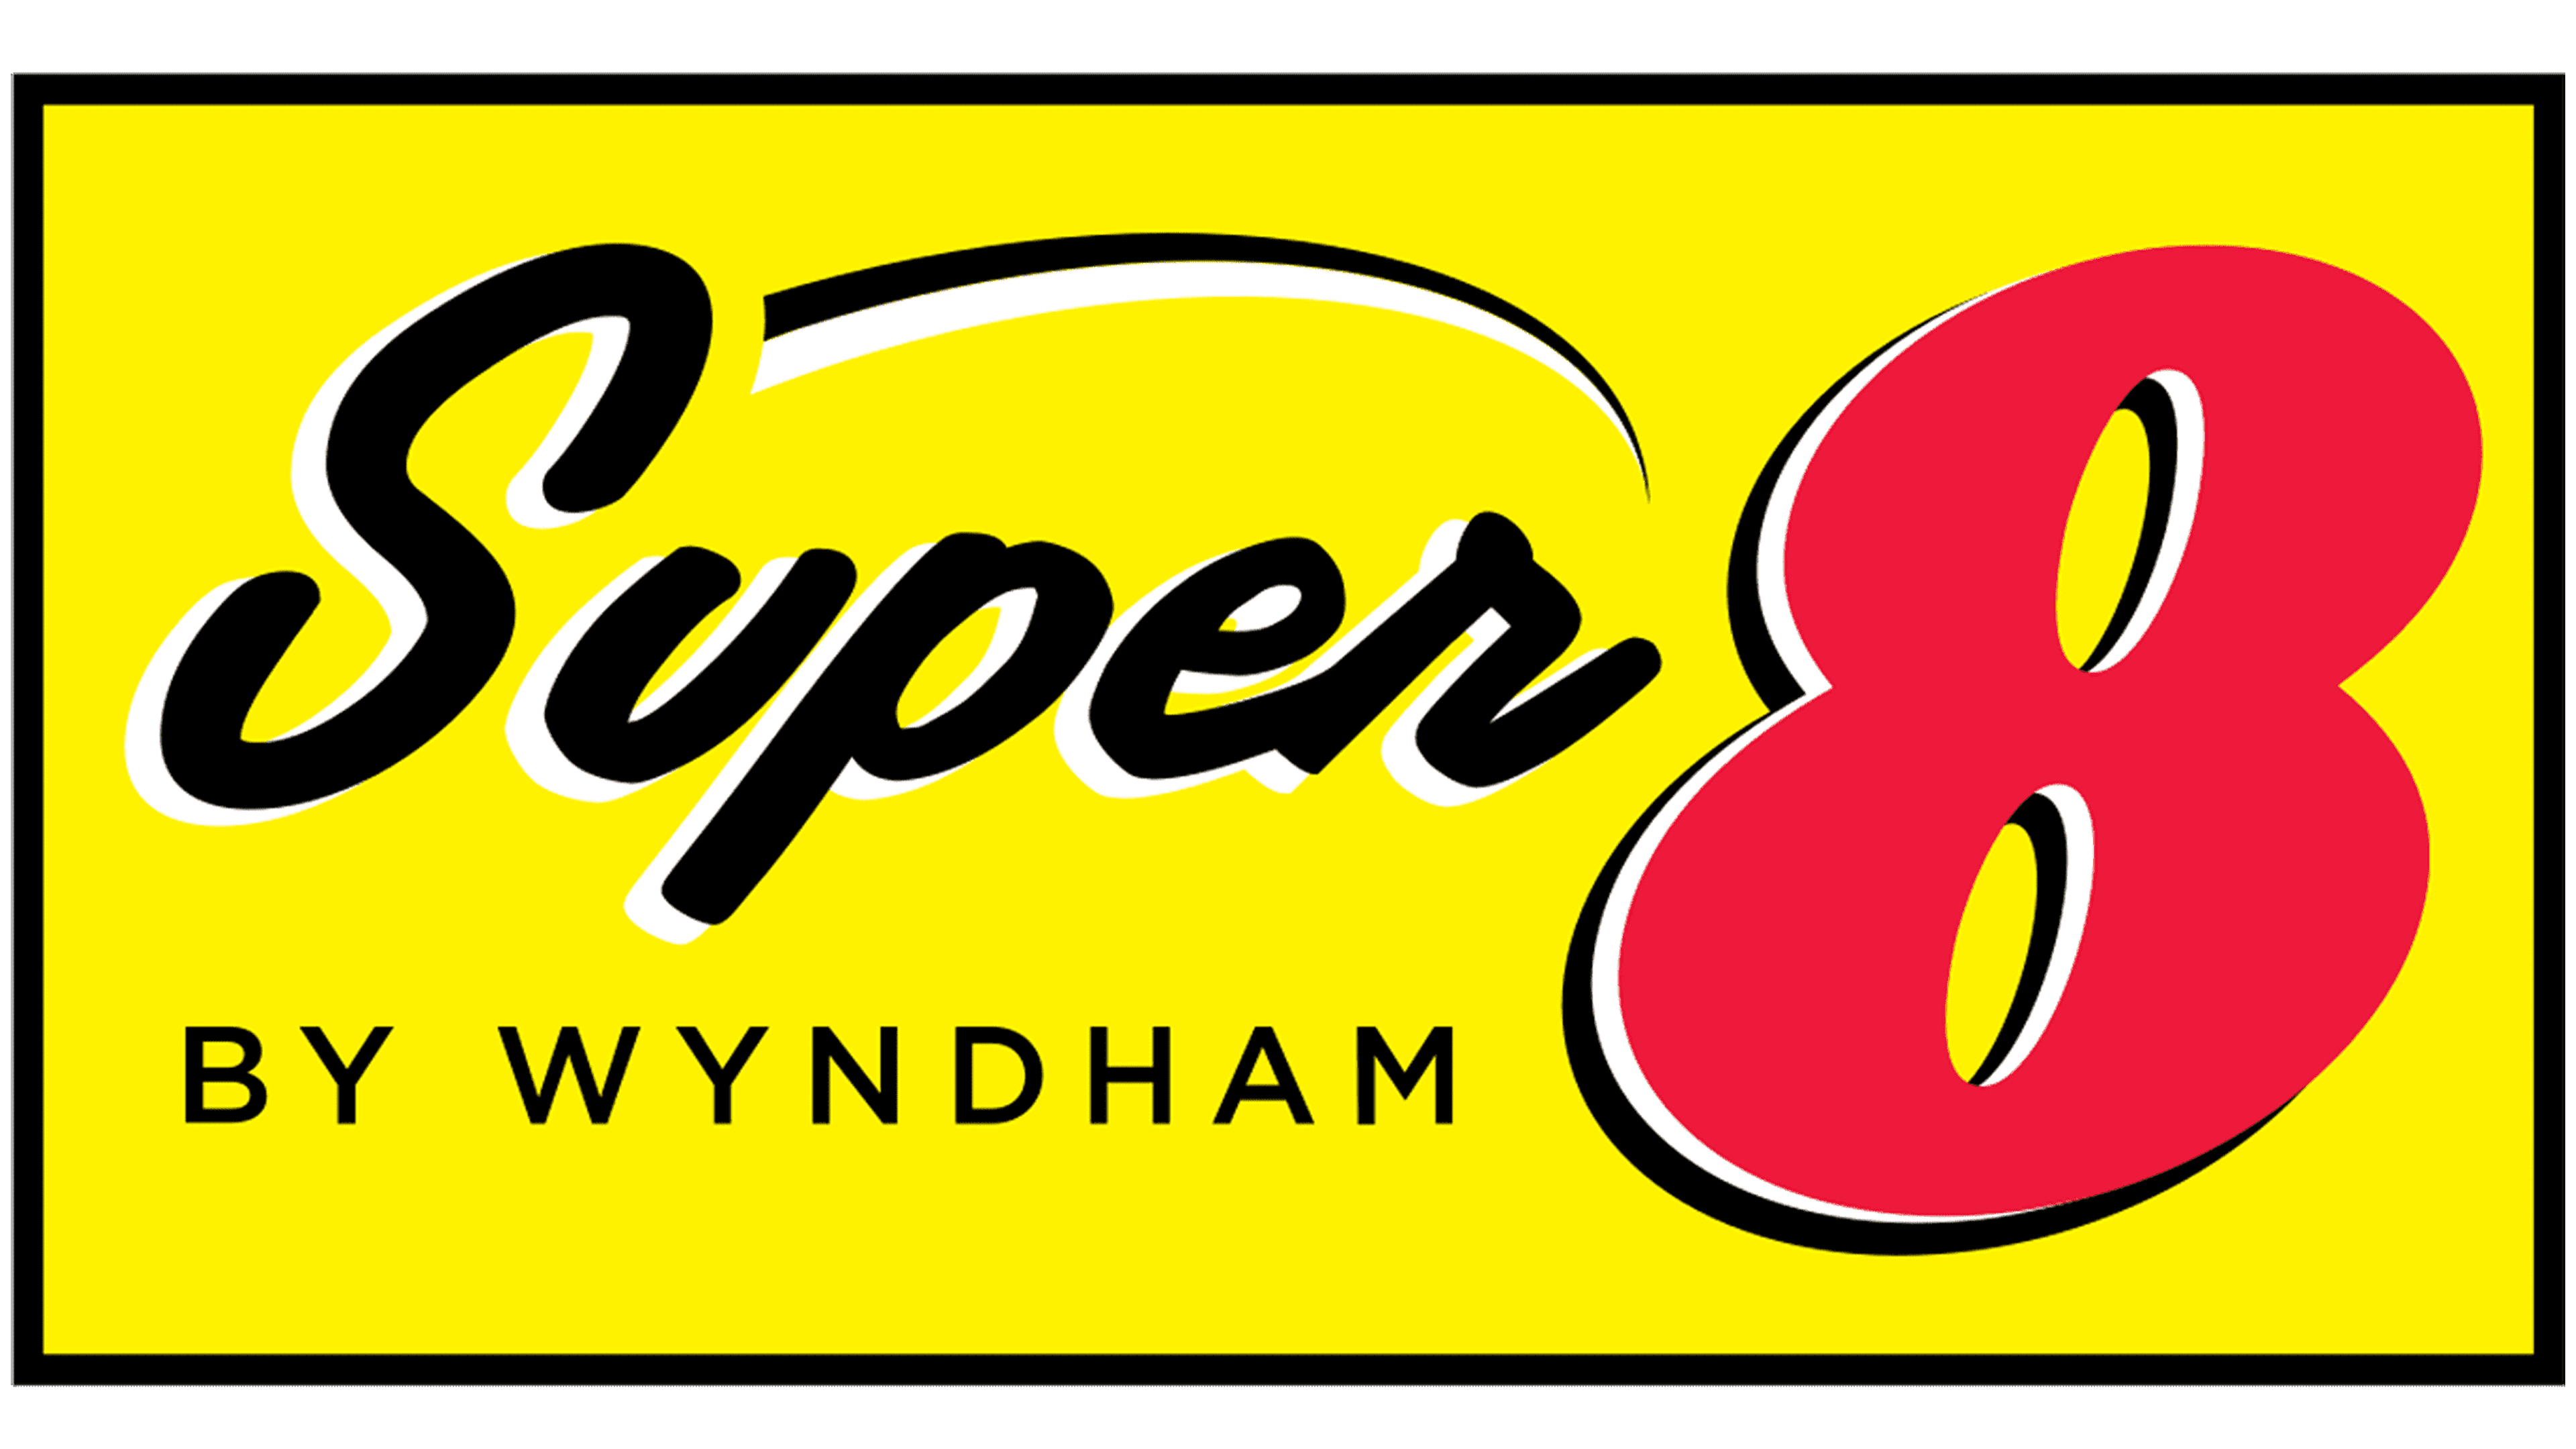 Super 8 Logo Logo